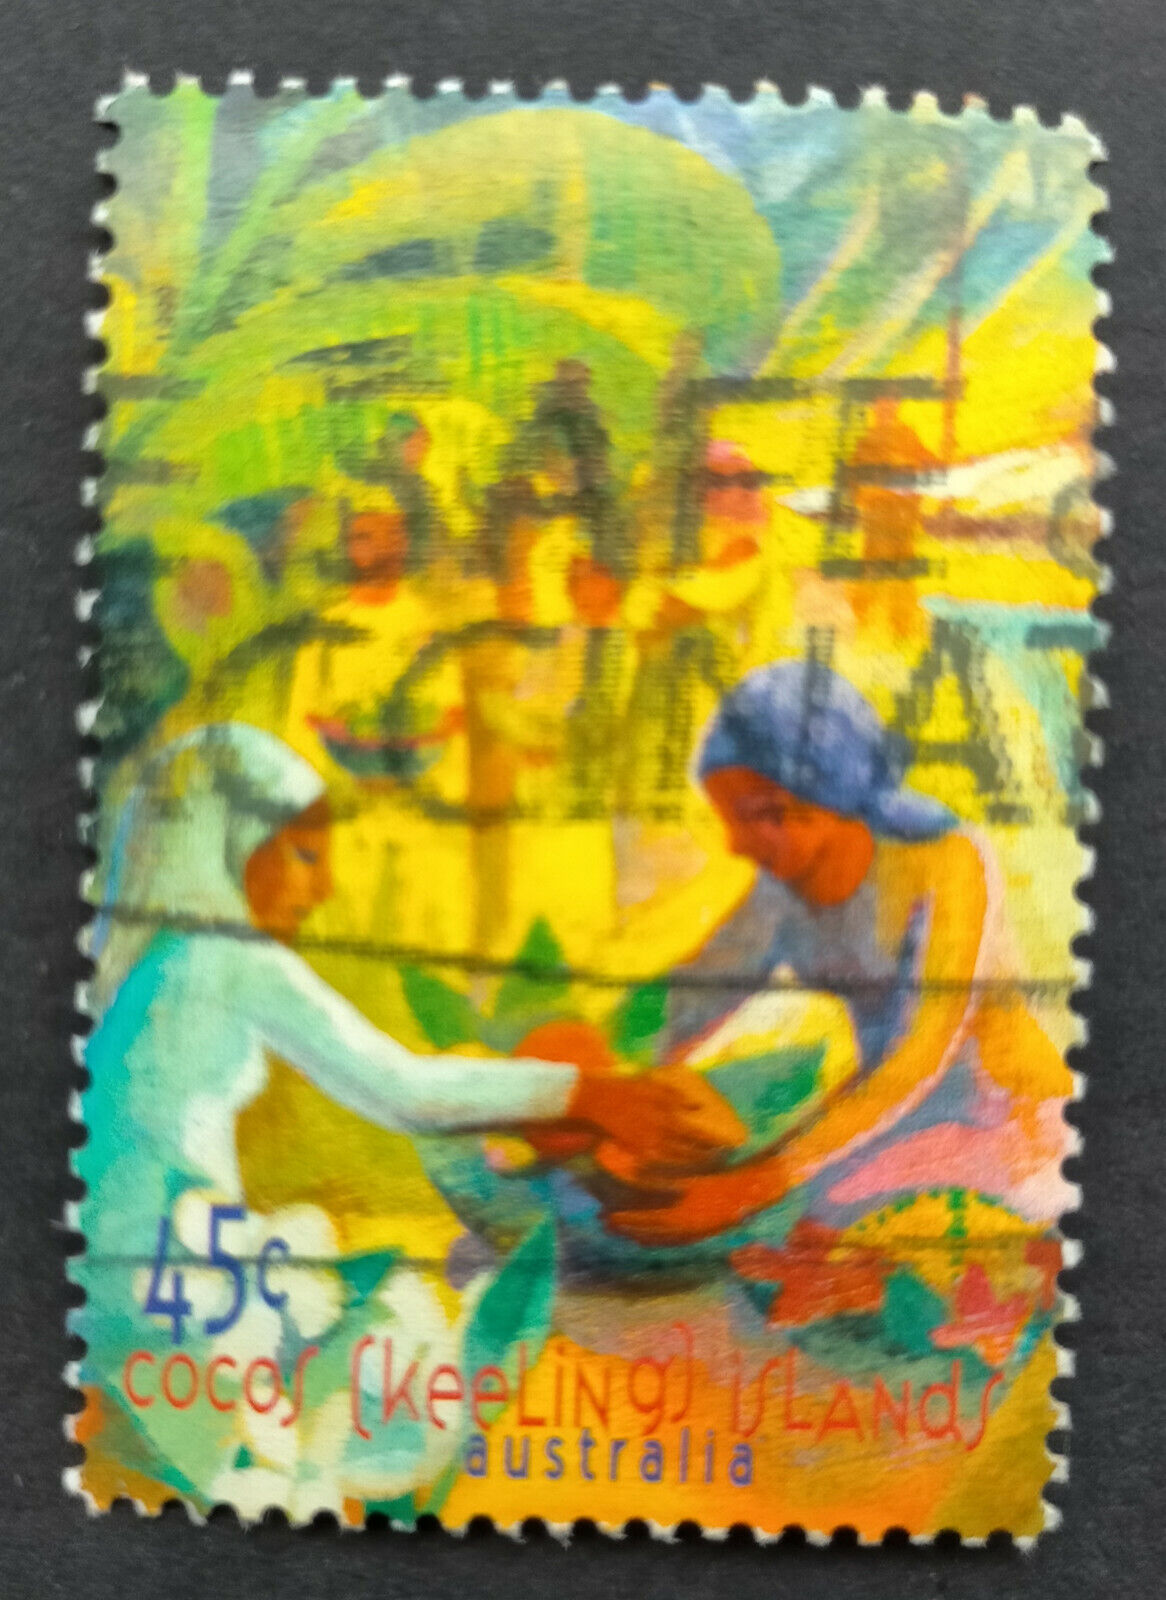 見事な Australian Cocos islands 65%OFF【送料無料】 used Stamp Raya 1999 Puasa Festiva Hari